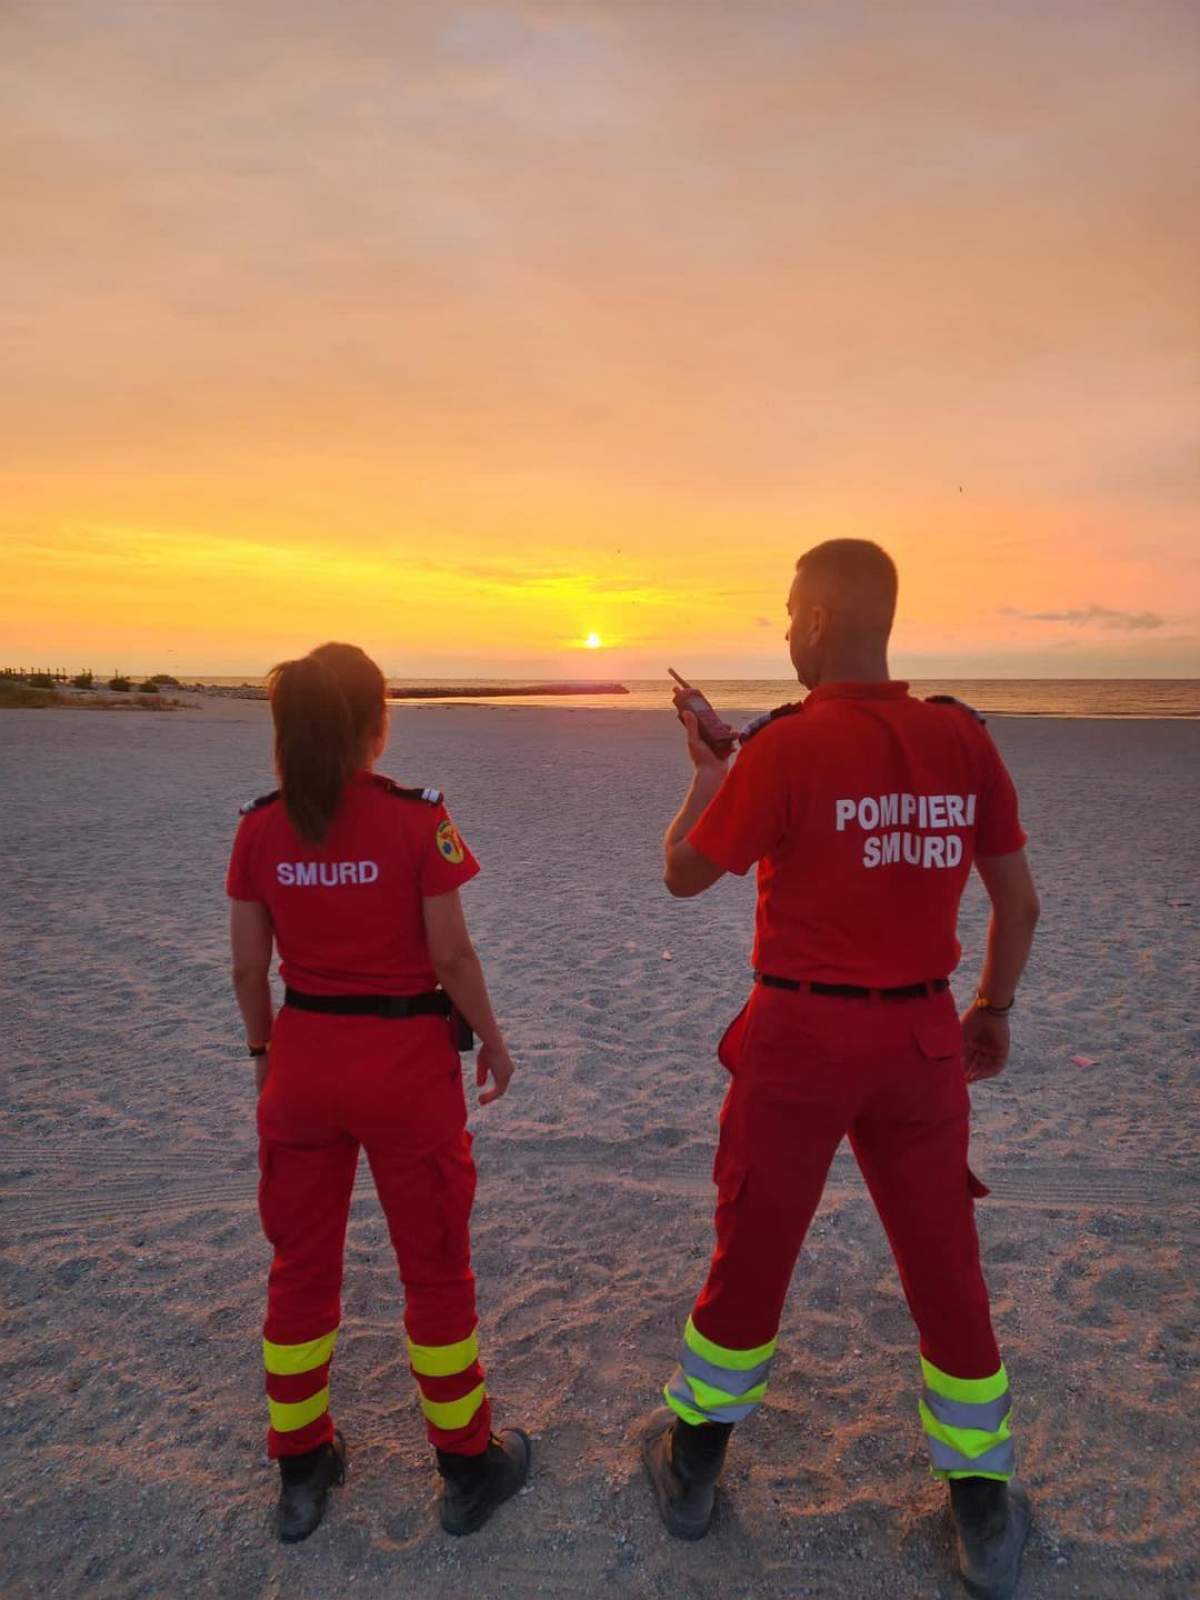 pompieri pe plaja mare